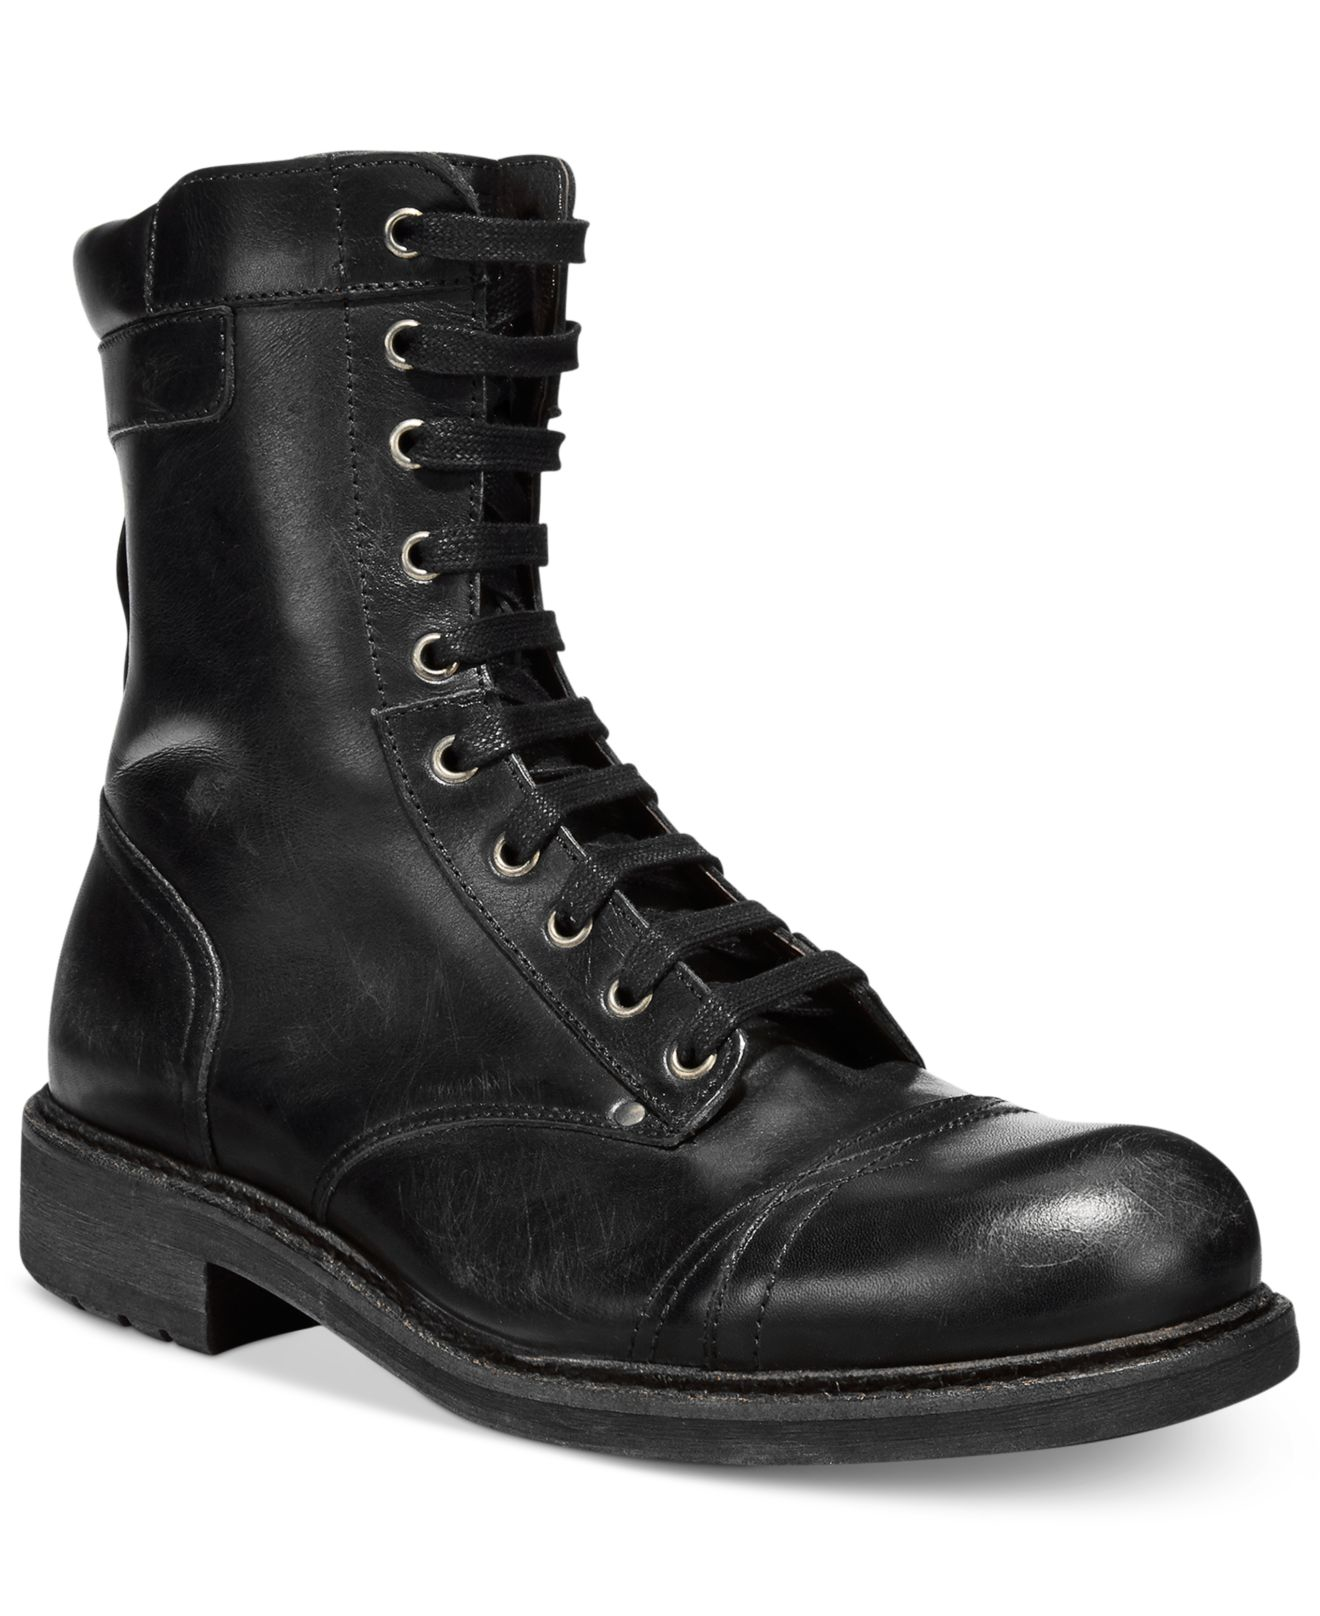 DIESEL Hardkor D-tanker Boots in Black for Men - Lyst